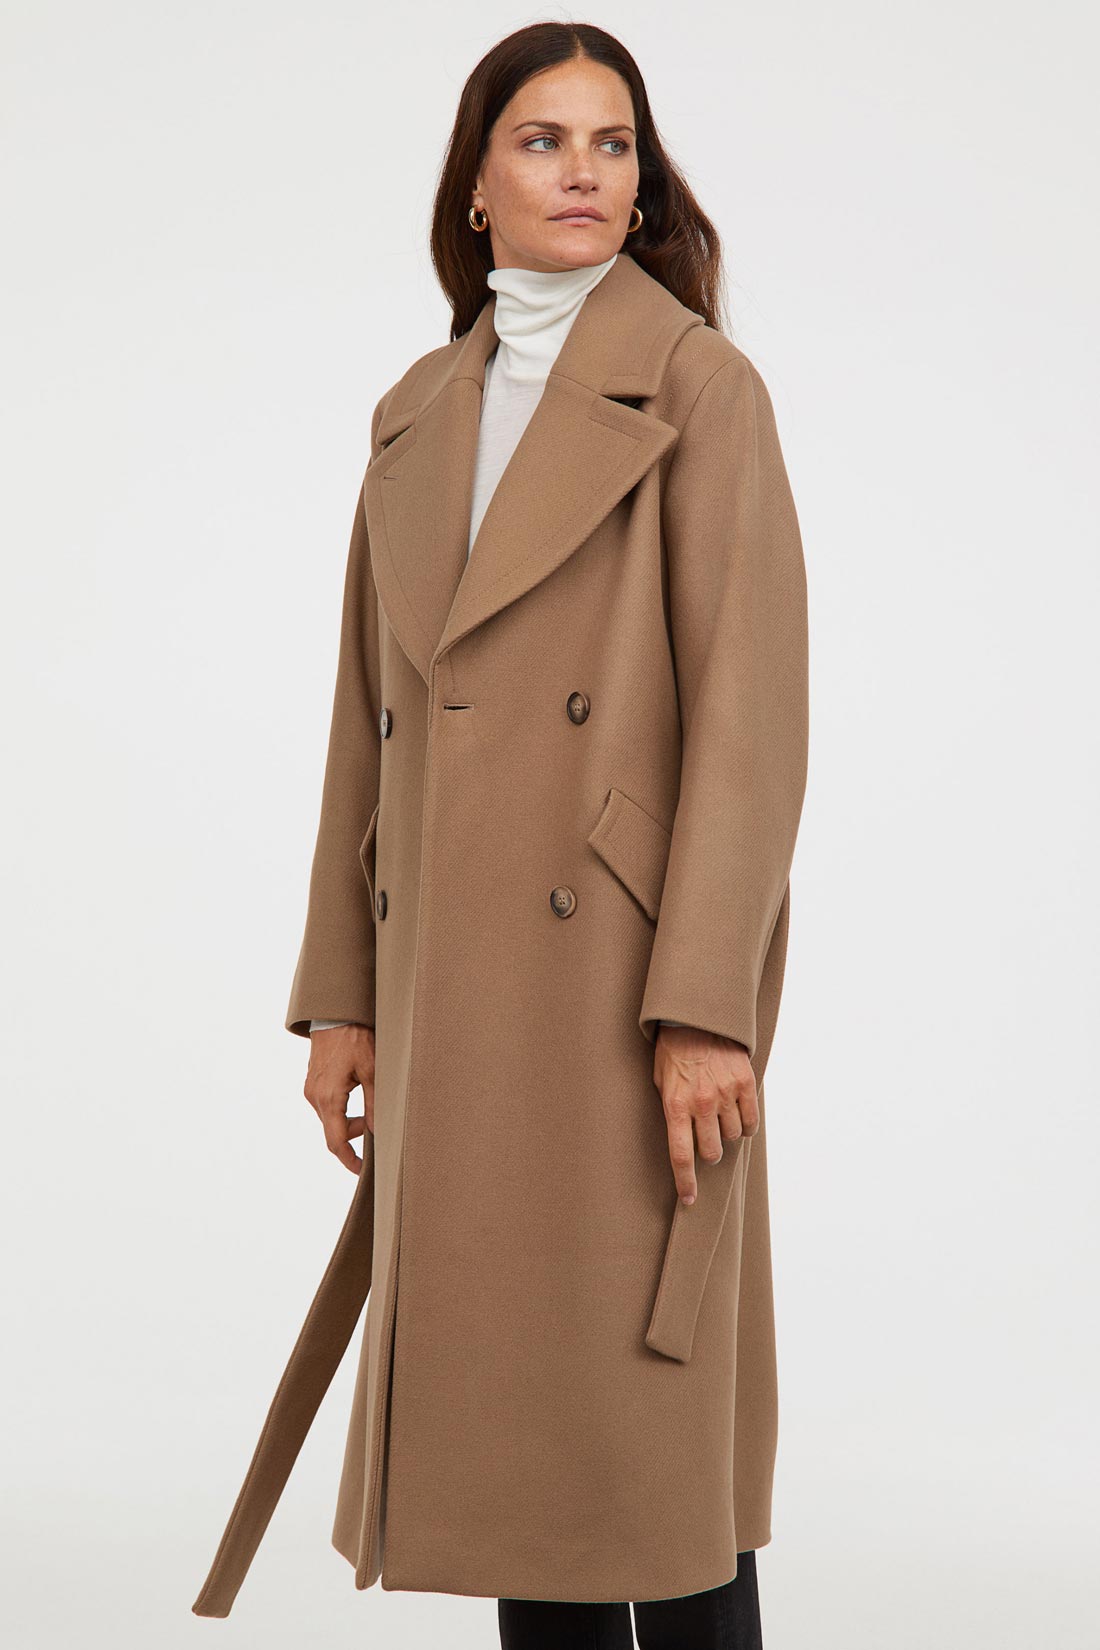 aerodrom Predsjednik Progoniti  H&M ove sezone ima baš odlične kapute - izdvajamo najljepše